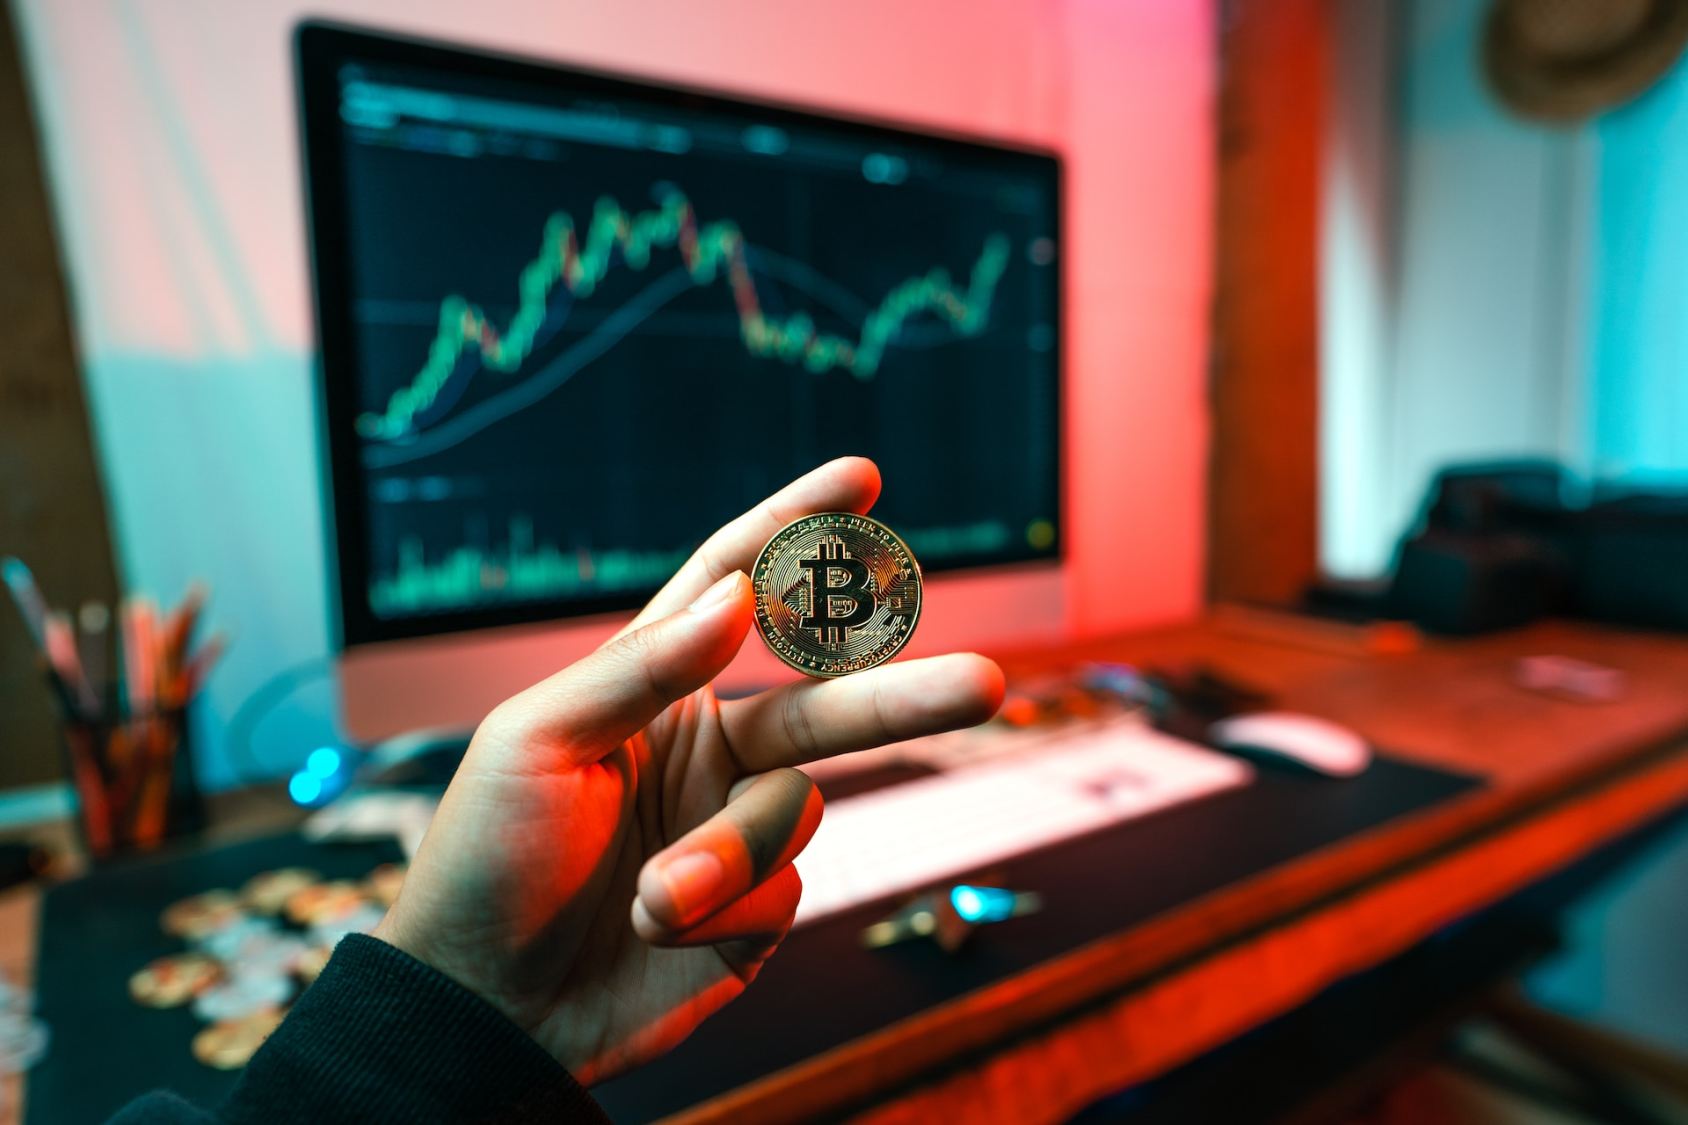 Imagem para a matéria sobre futuro das criptomoedas em que uma mão segura uma moeda de bitcoin com uma computador ao fundo.